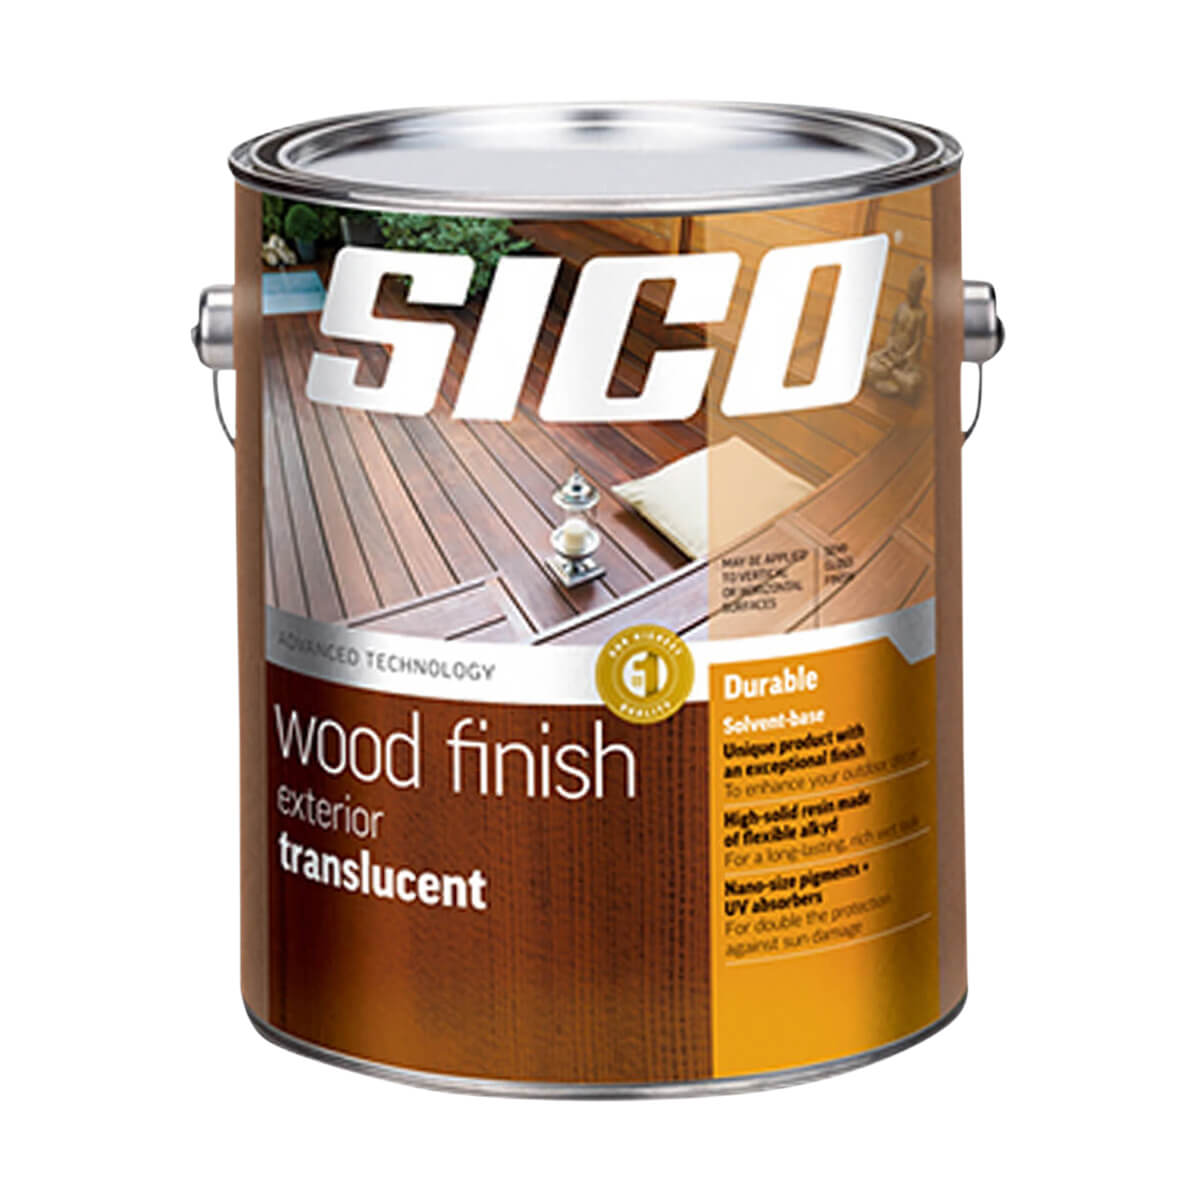 Sico Translucent Exterior Wood Finish - Series 236 - 3.78 L - Redwood